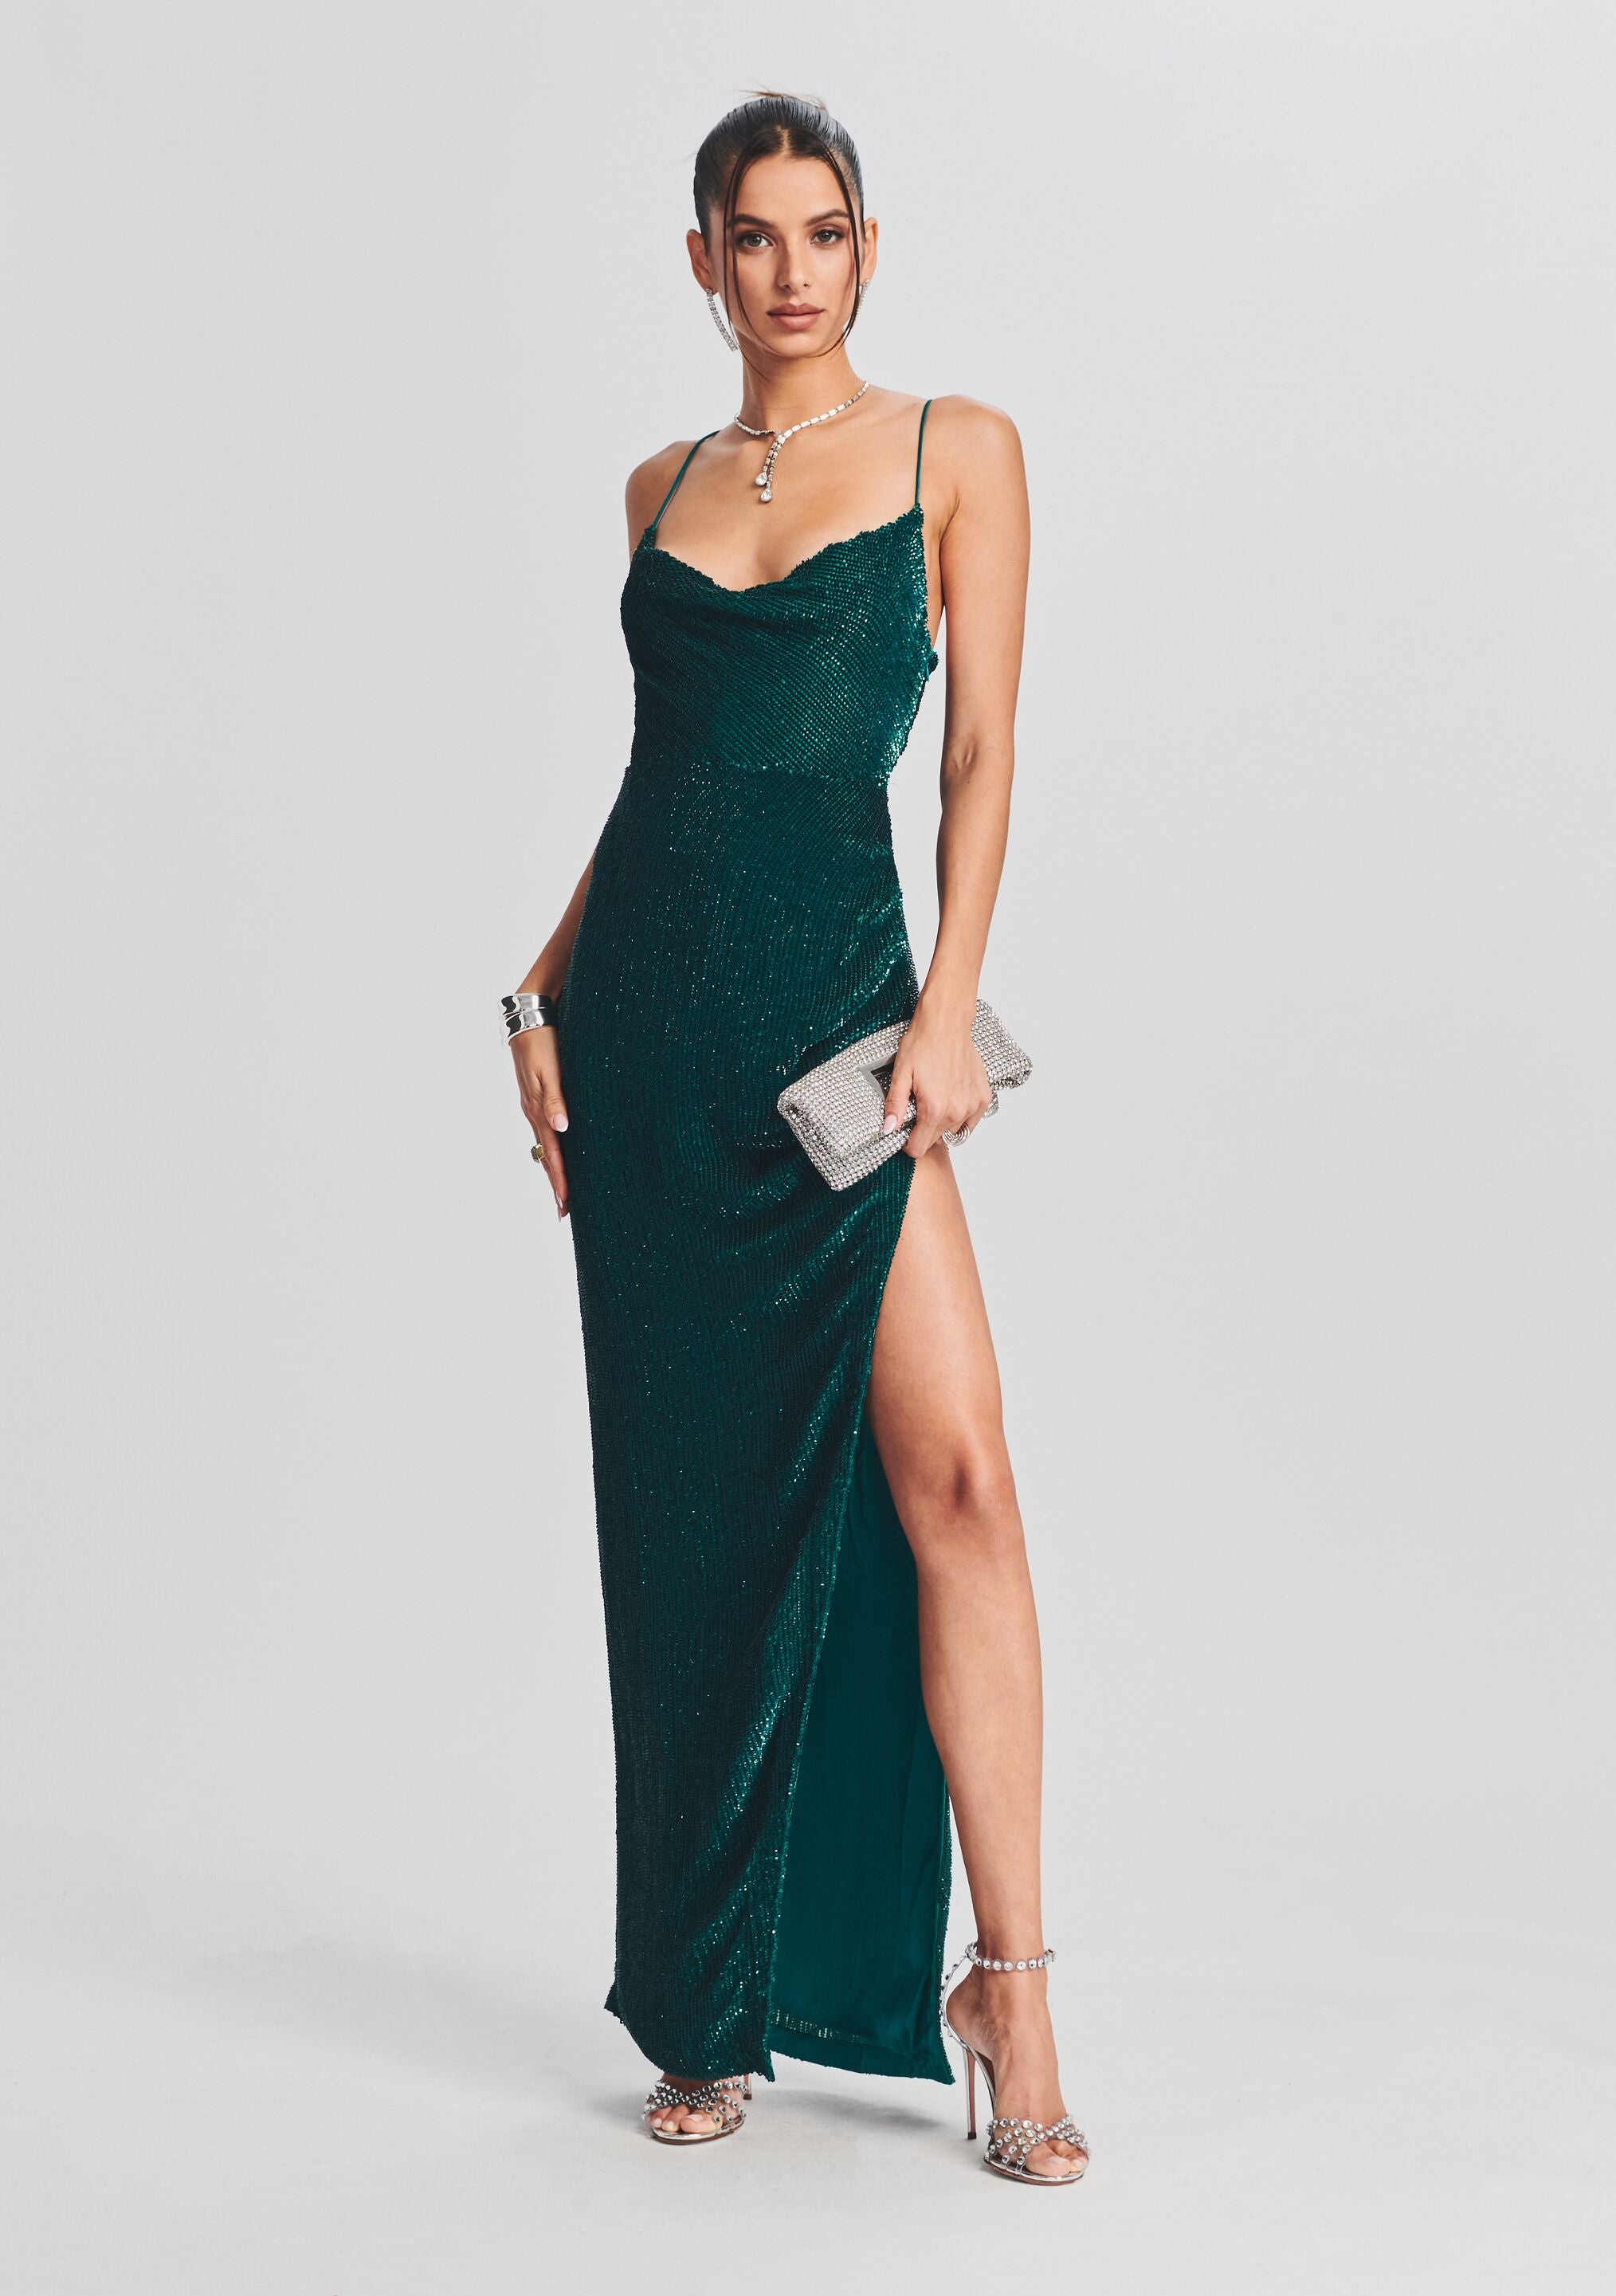 Retrofete Katya sequin-embellished gown - Green